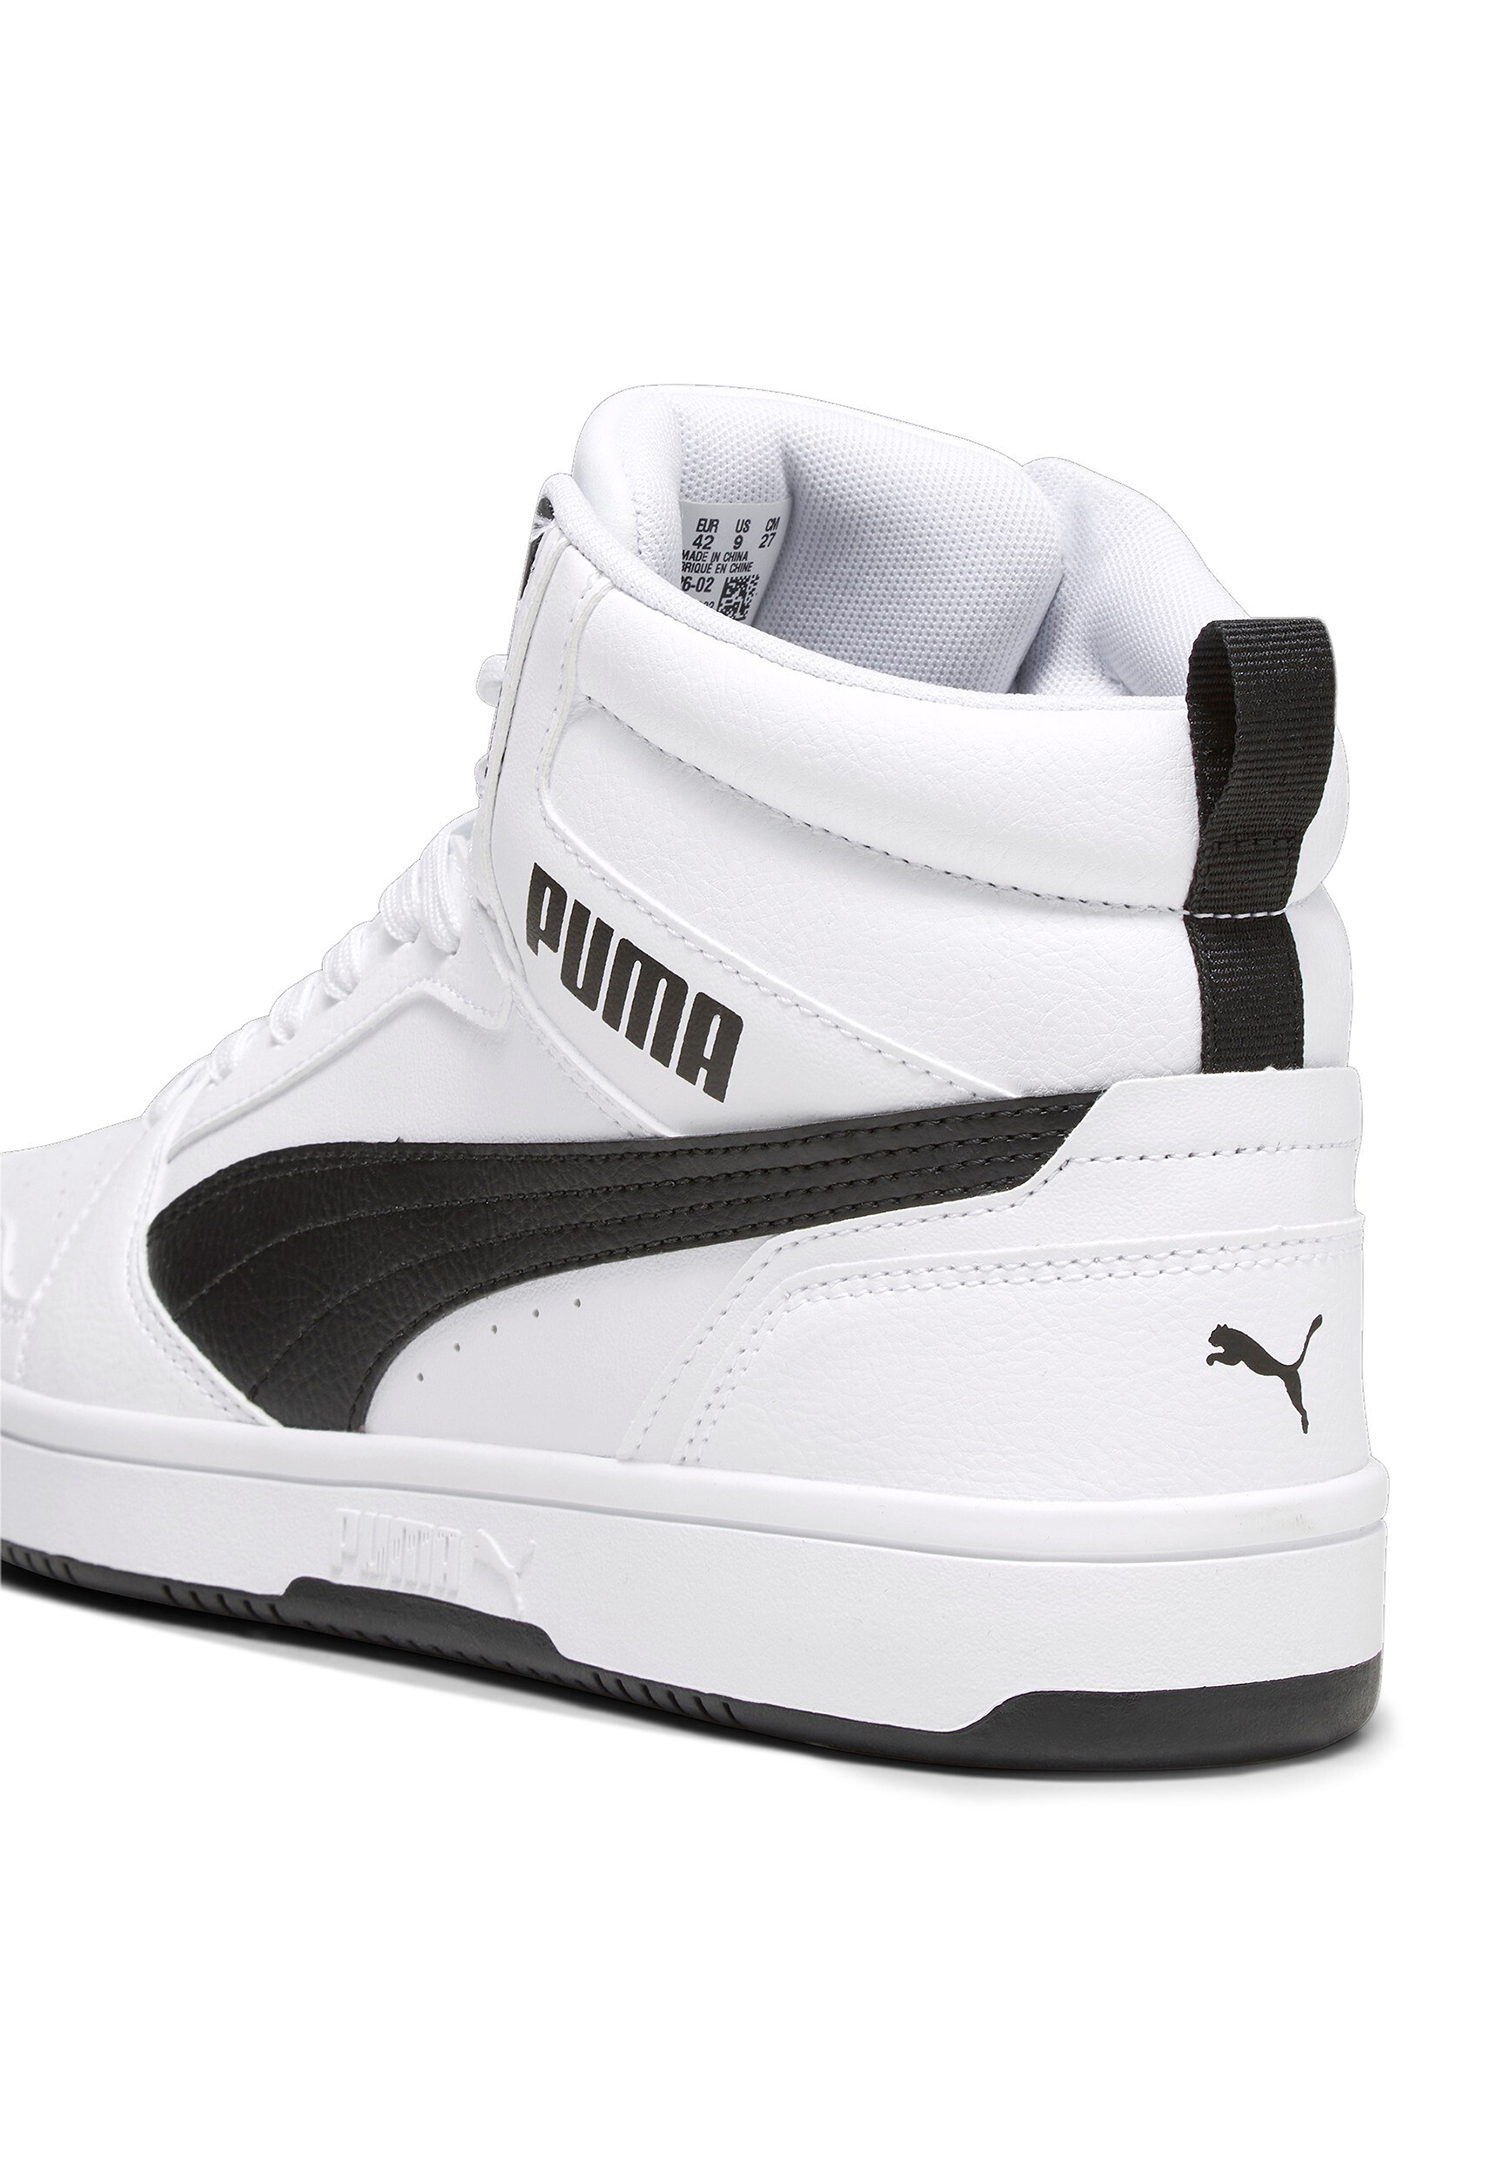 Puma Rebound v6 Hoher Sneaker Stiefel Boots Herren Sneaker 392326 02 weiss